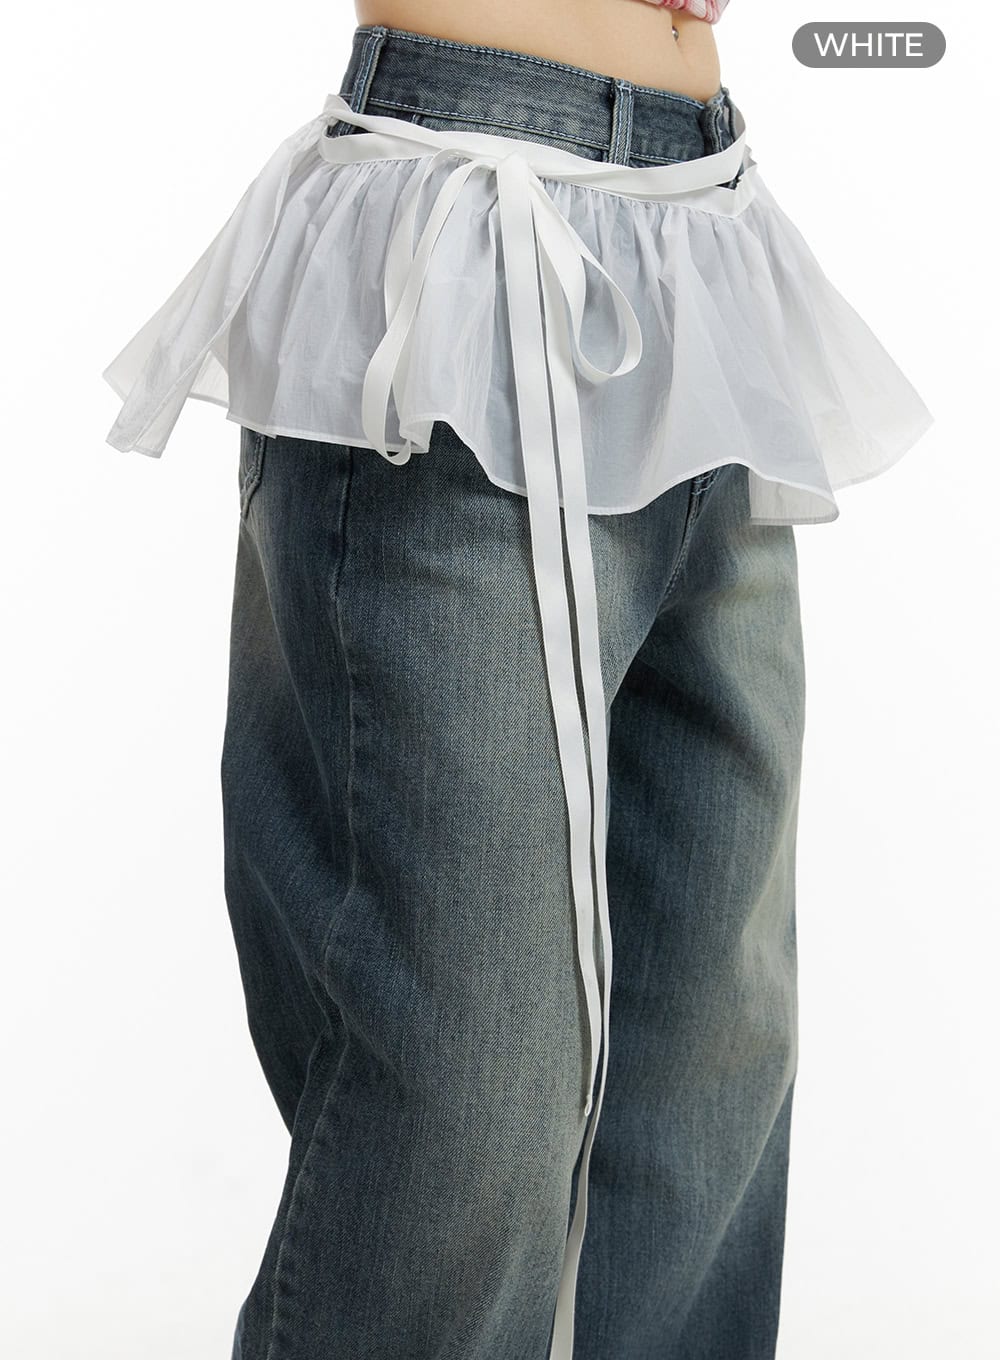 sheer-frill-mini-skirt-wrap-cu425